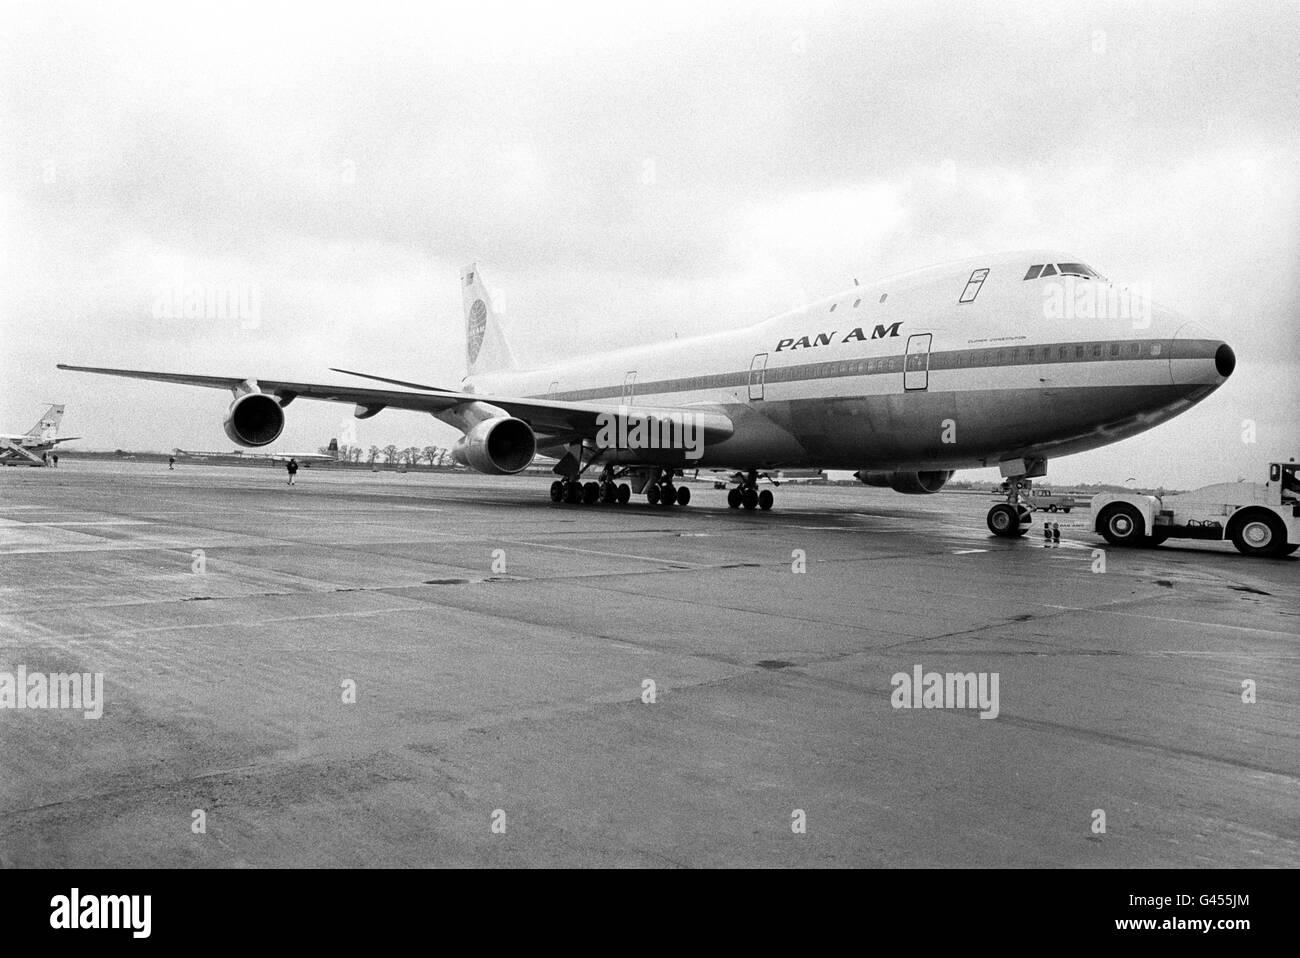 Il primo Boeing 747 Jumbo Jet atterra all'aeroporto di Heathrow sulla pista. Tra i 361 passeggeri del volo panamericano c'erano il personale delle compagnie aeree e alcune famiglie e funzionari dell'Agenzia federale dell'aviazione americana. L'enorme aeromobile è arrivato con tre ore di ritardo a causa di un cambio di motore e di un ingorgo all'aeroporto JFK di New York. Foto Stock